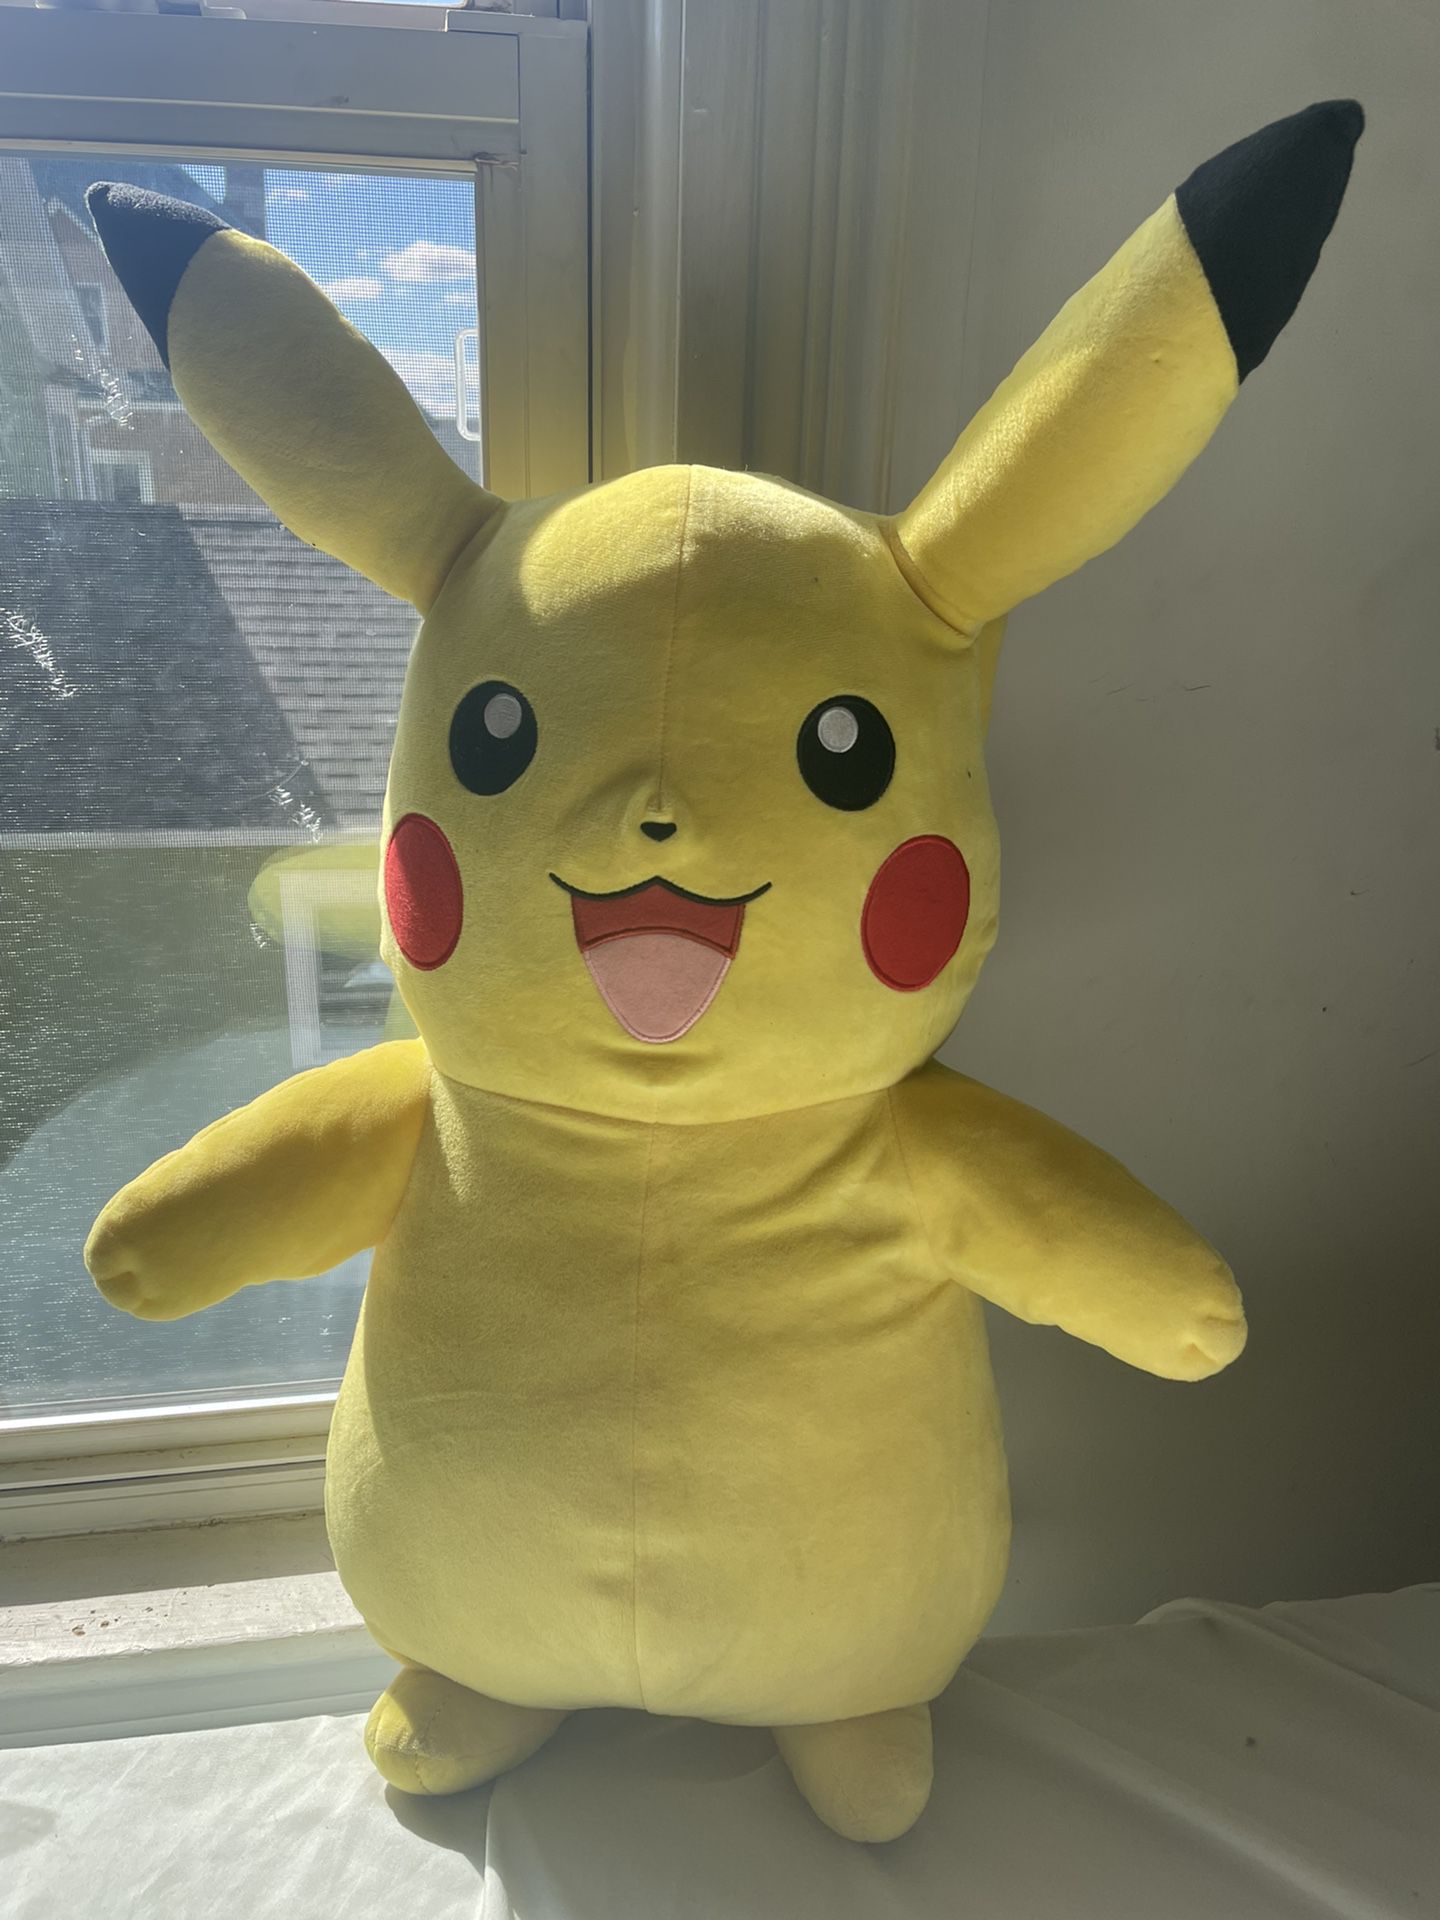 Giant 24” Pikachu Pokémon Stuffed Animal Toy 